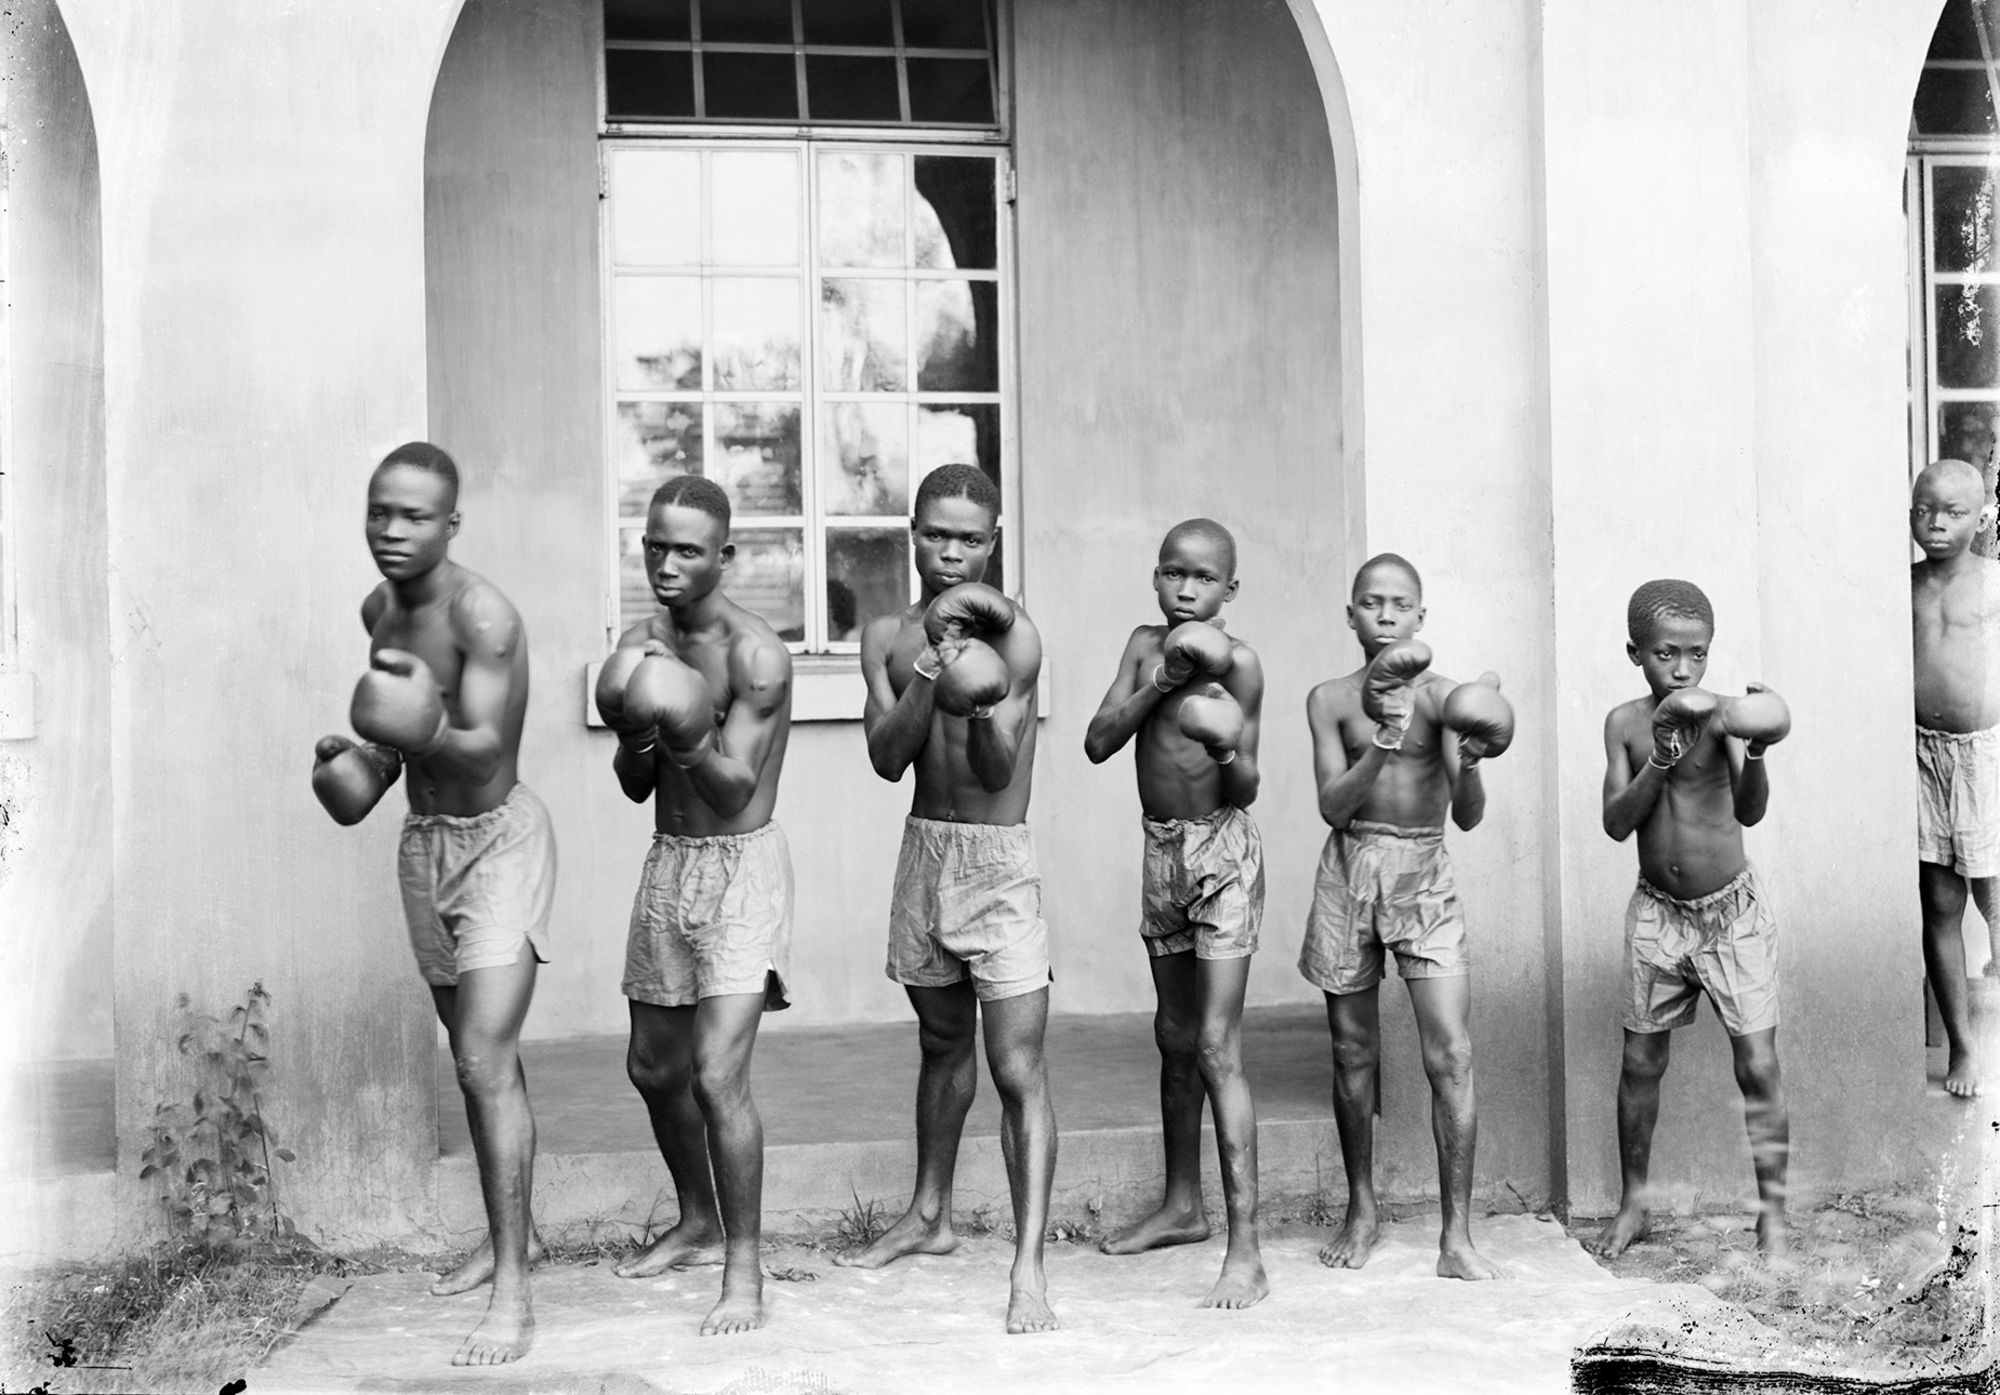 Achimota School Boxing Club taken by J.K Bruce Vanderpuije in 1933.